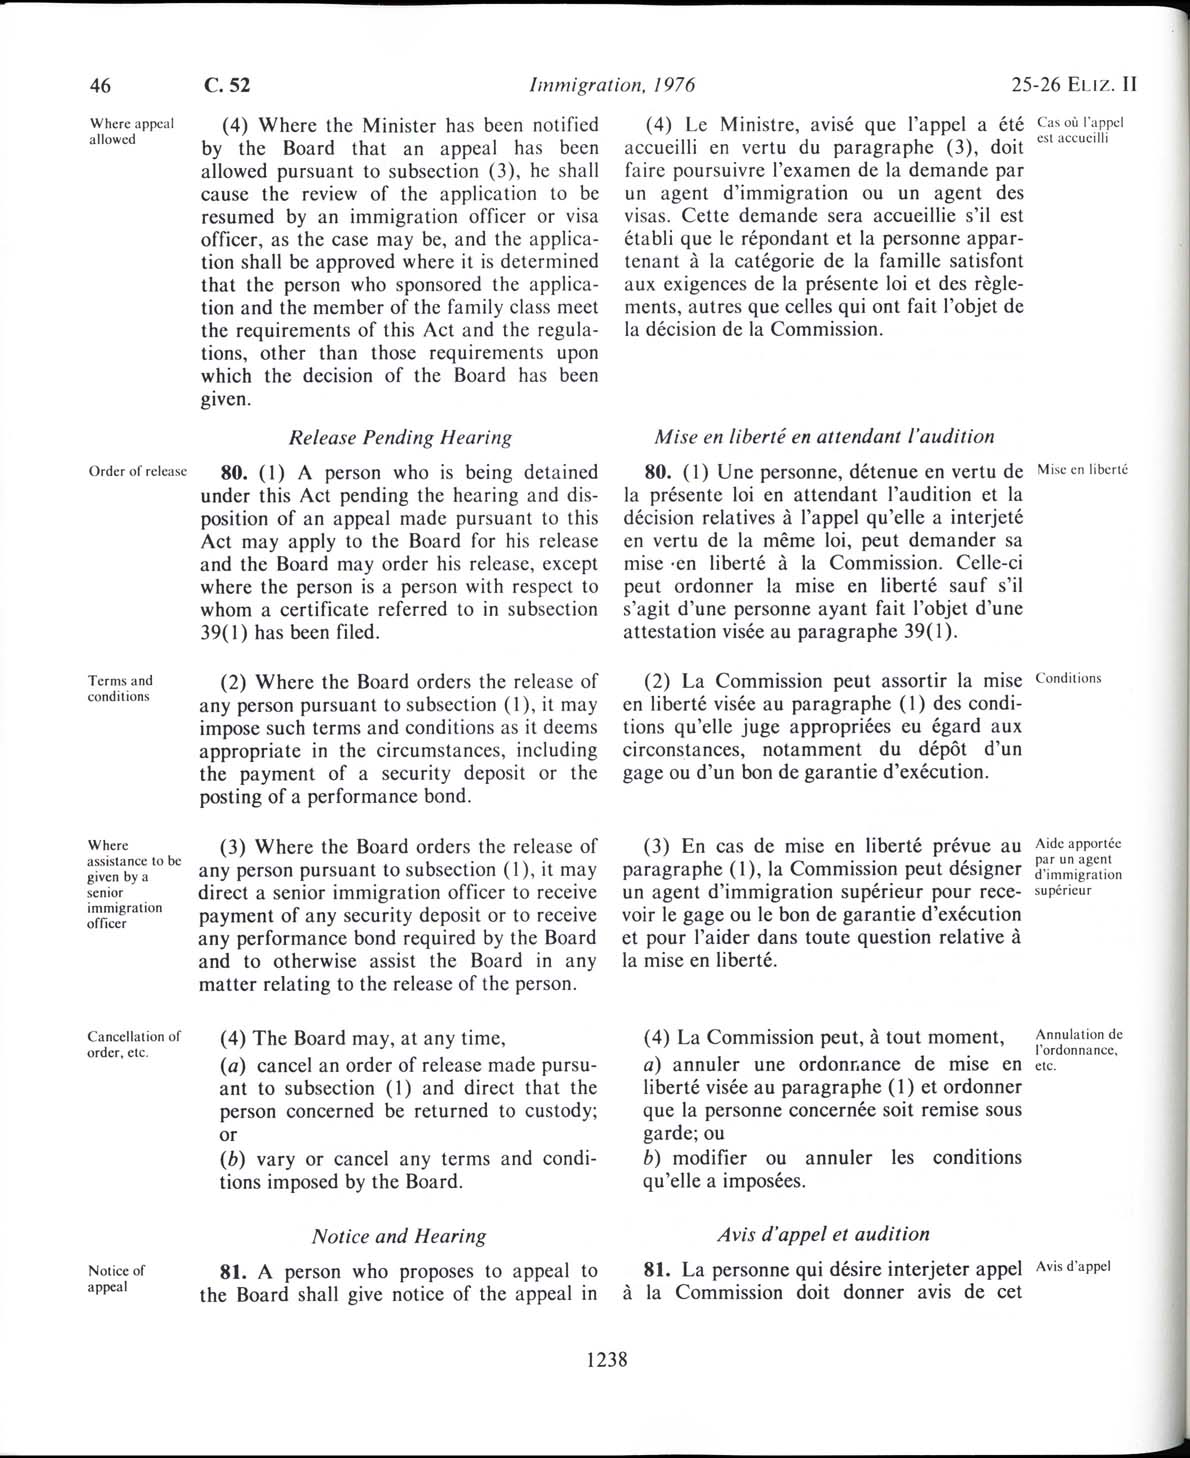 Page 1238 Loi sur l’immigration de 1976